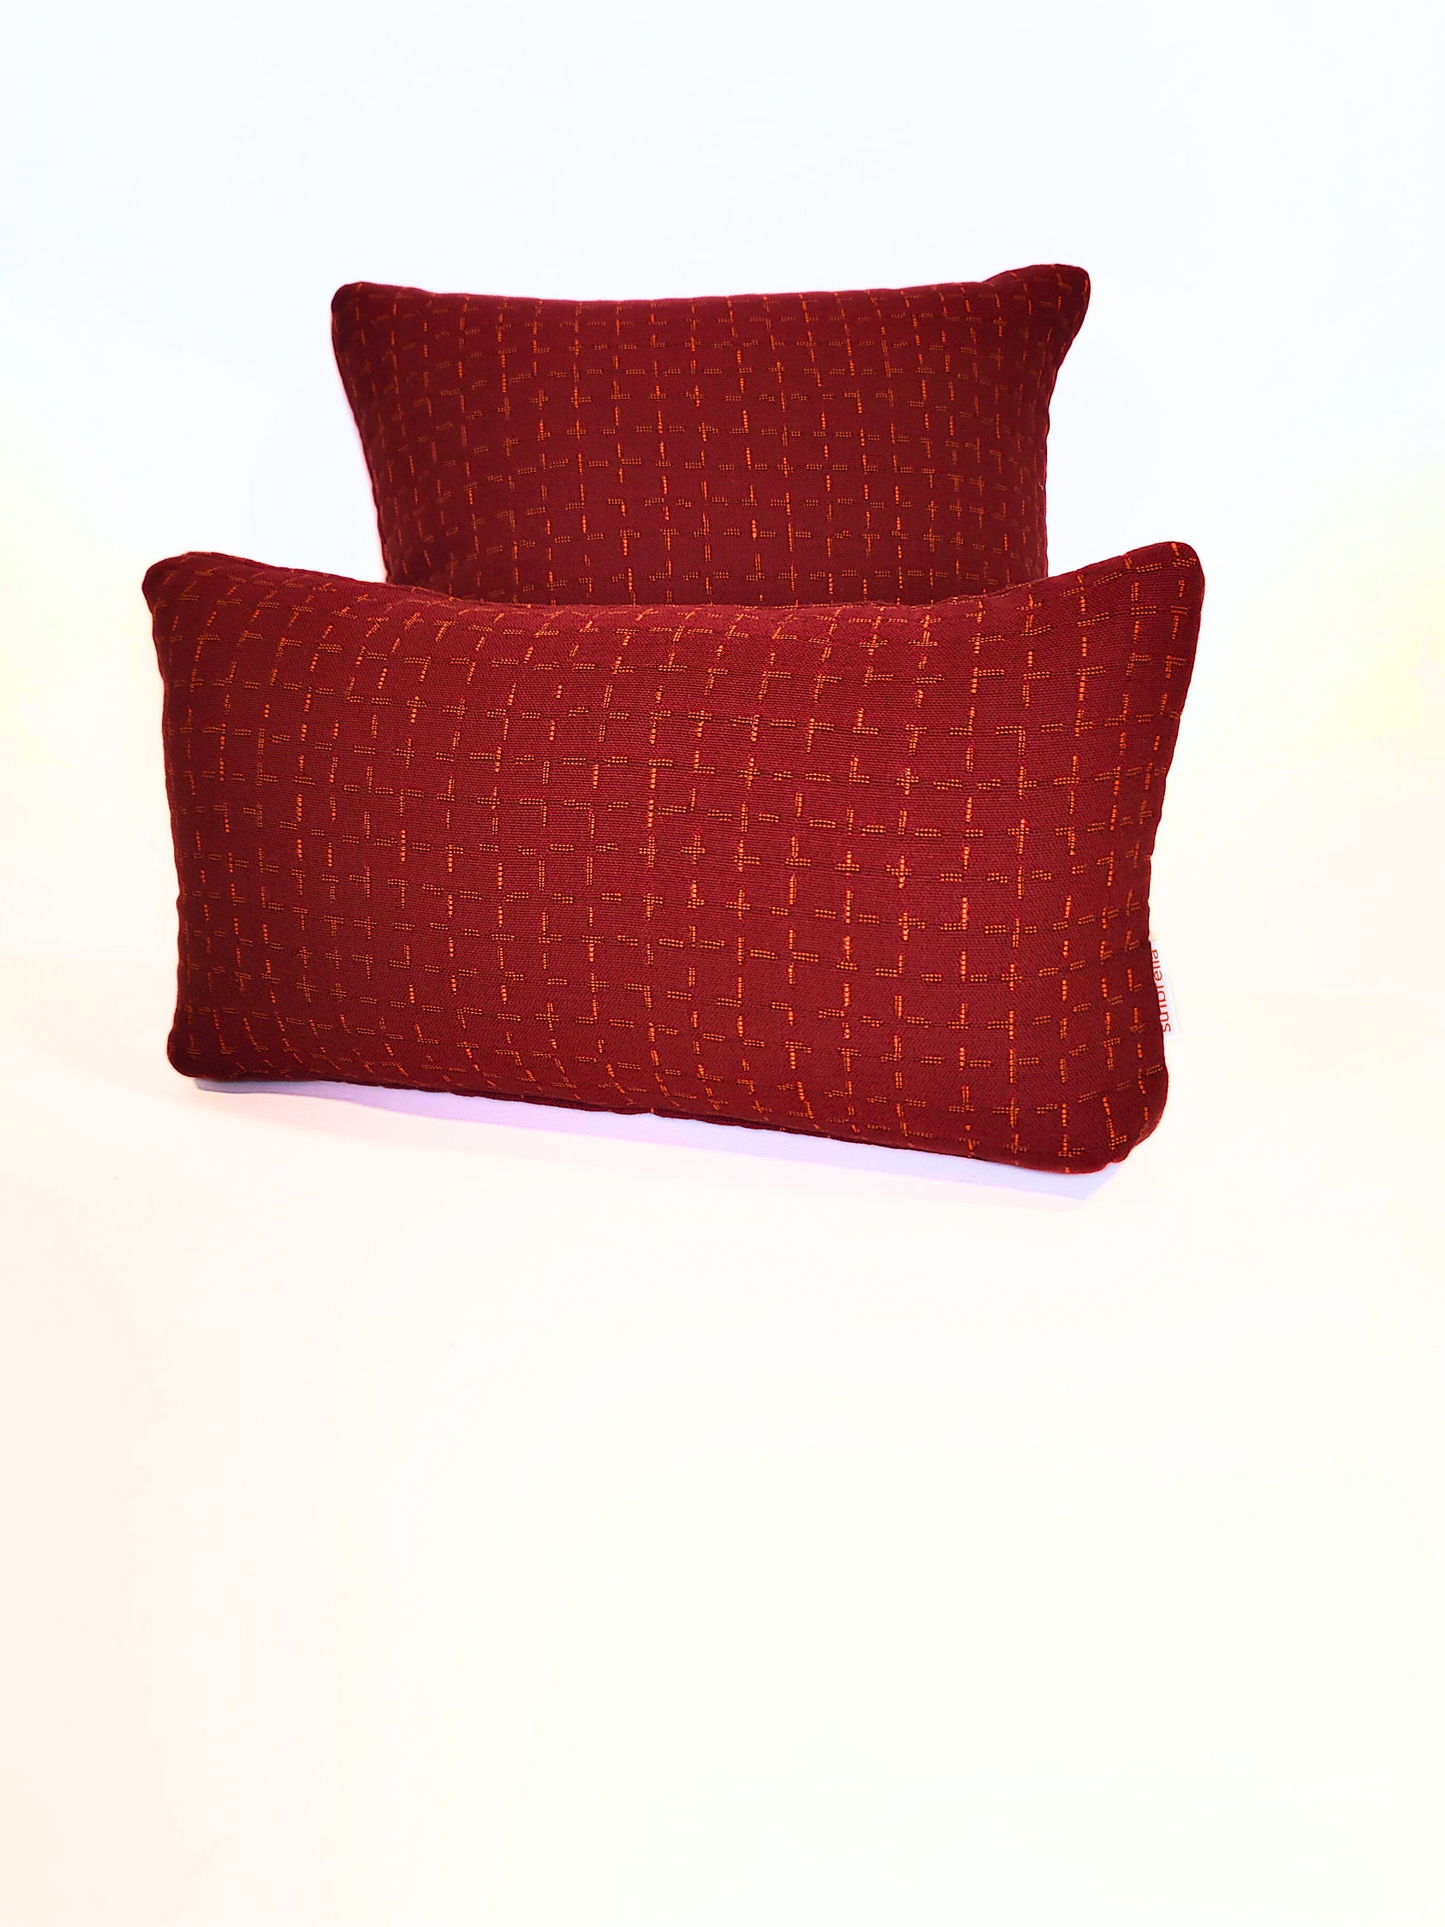 Premium Sunbrella "Scarlet Supply" Indoor/Outdoor Toss Pillow Cover